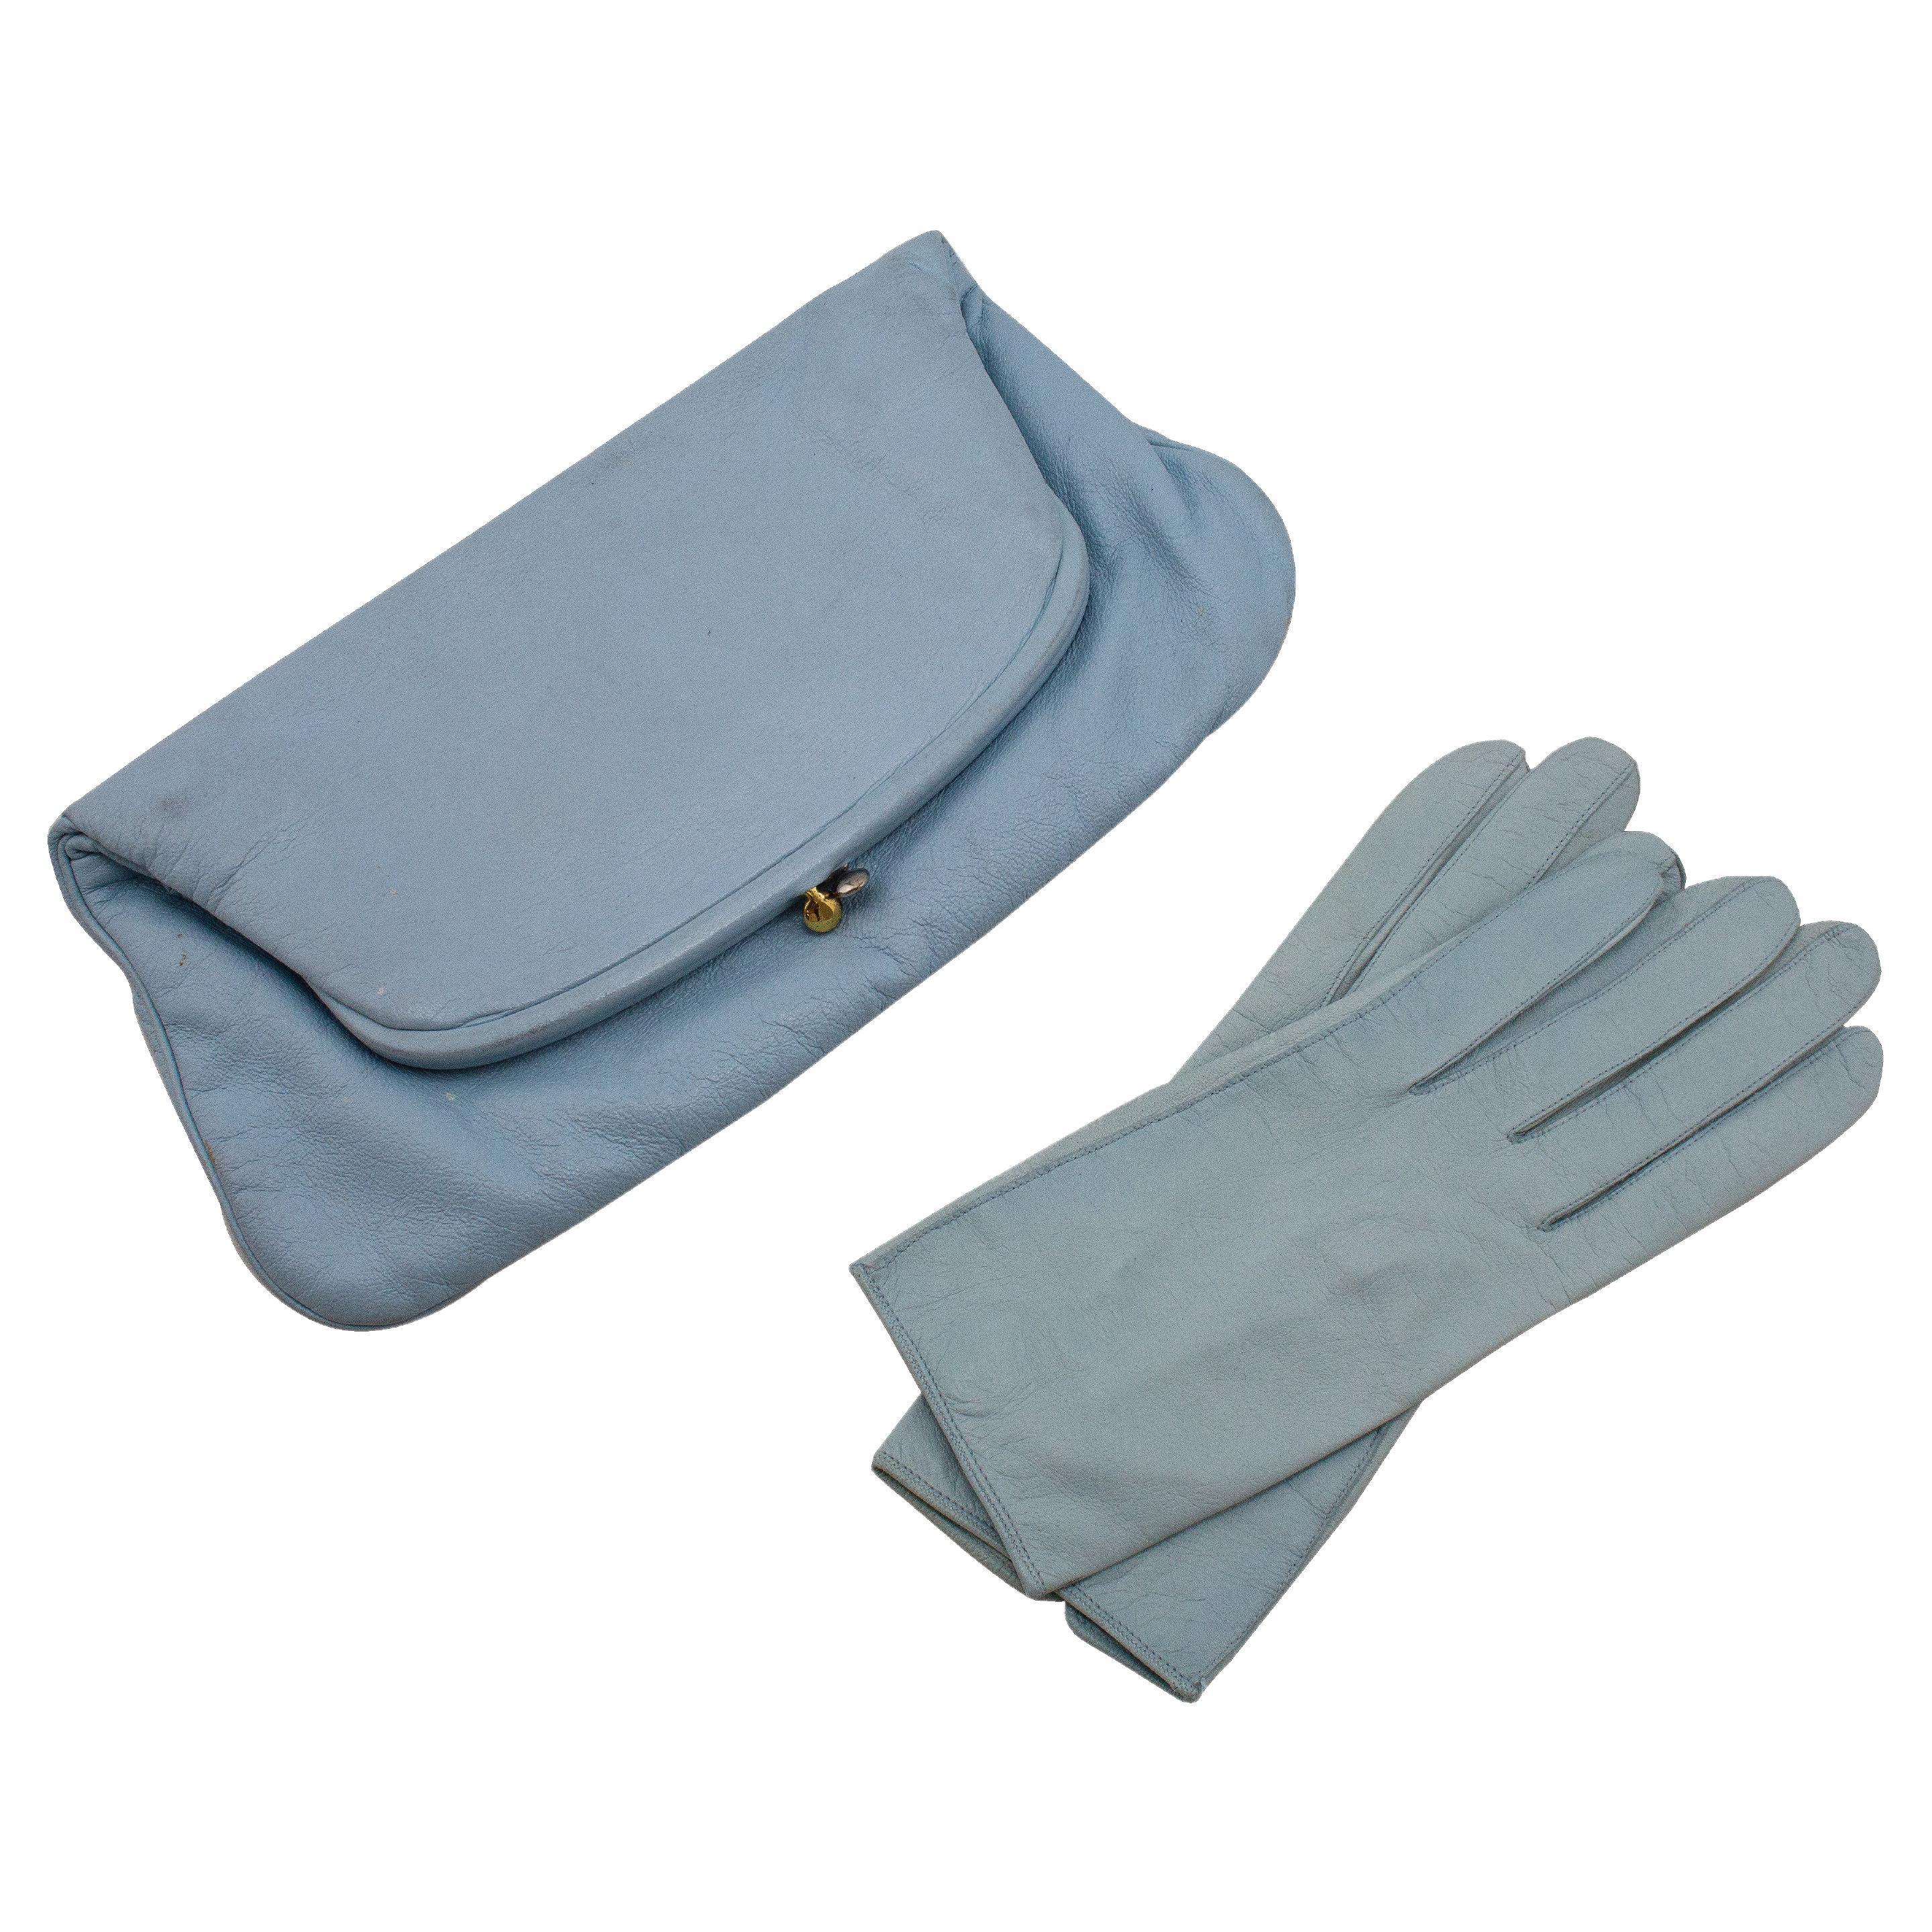 Pochette en cuir bleu bébé Coblentz des années 1950 avec gants de chevreau assortis